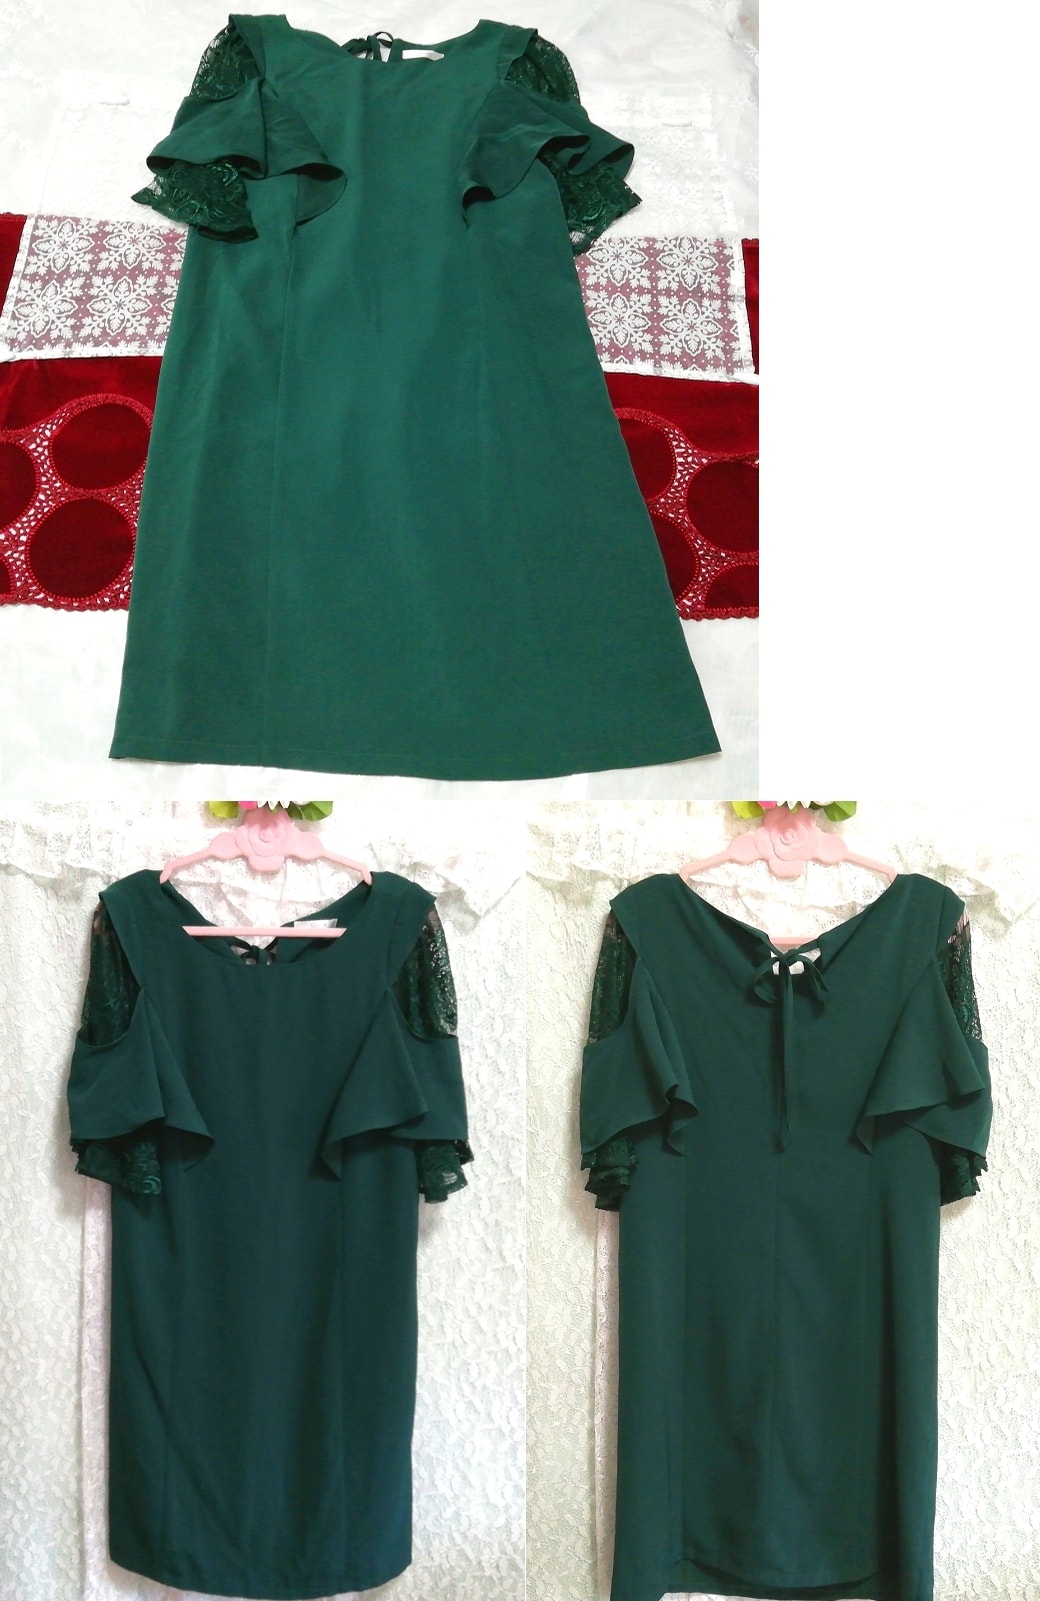 فستان نوم بأكمام قصيرة من الرداء باللون الأخضر الداكن, موضة, أزياء السيدات, ملابس نوم, لباس نوم